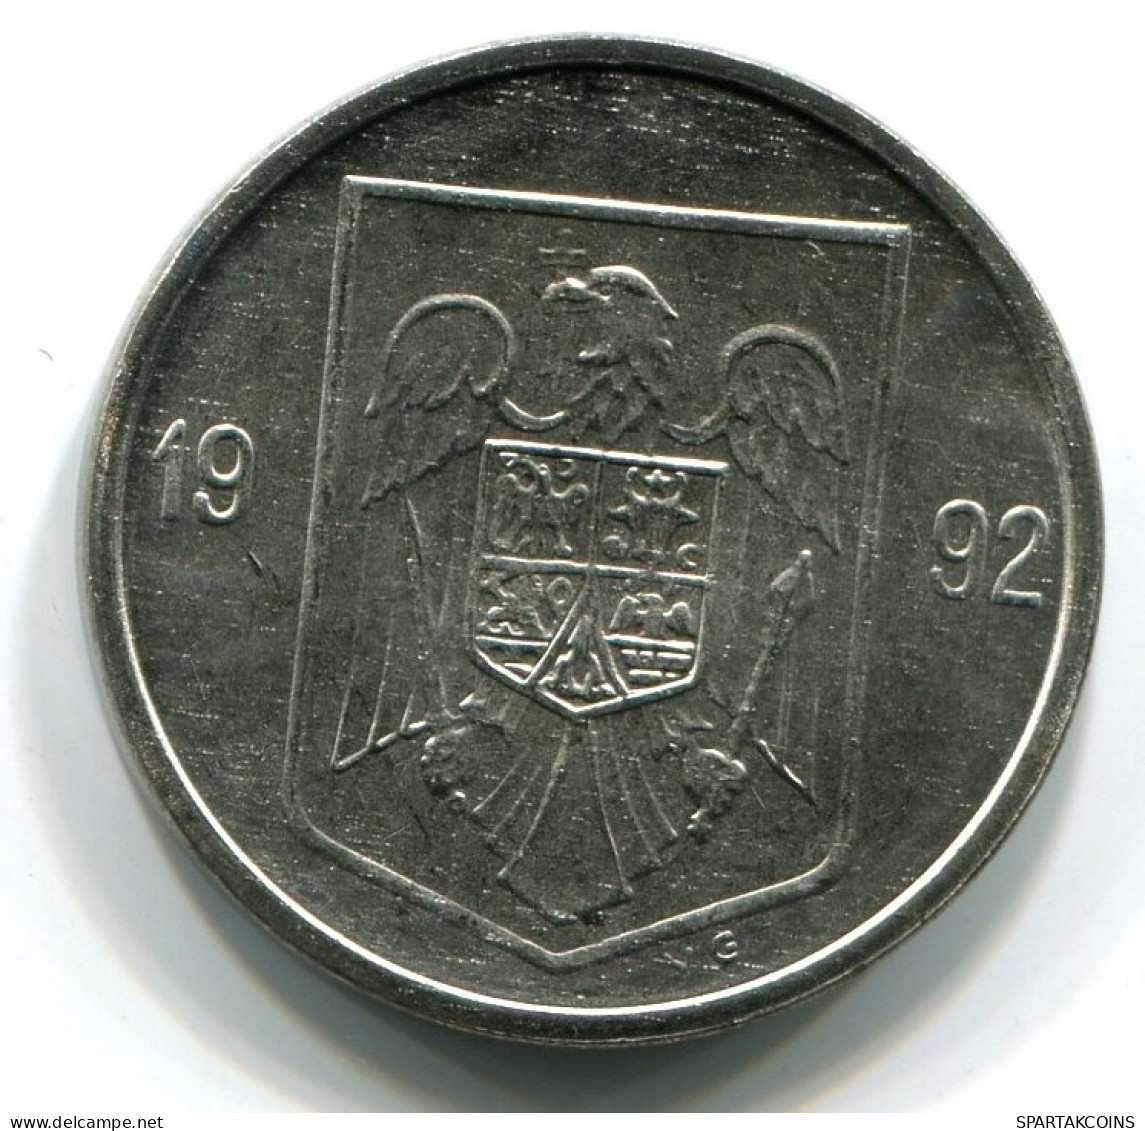 5 LEI 1992 ROMÁN OMANIA UNC Eagle Coat Of Arms V.G Mark Moneda #W11230.E.A - Rumania